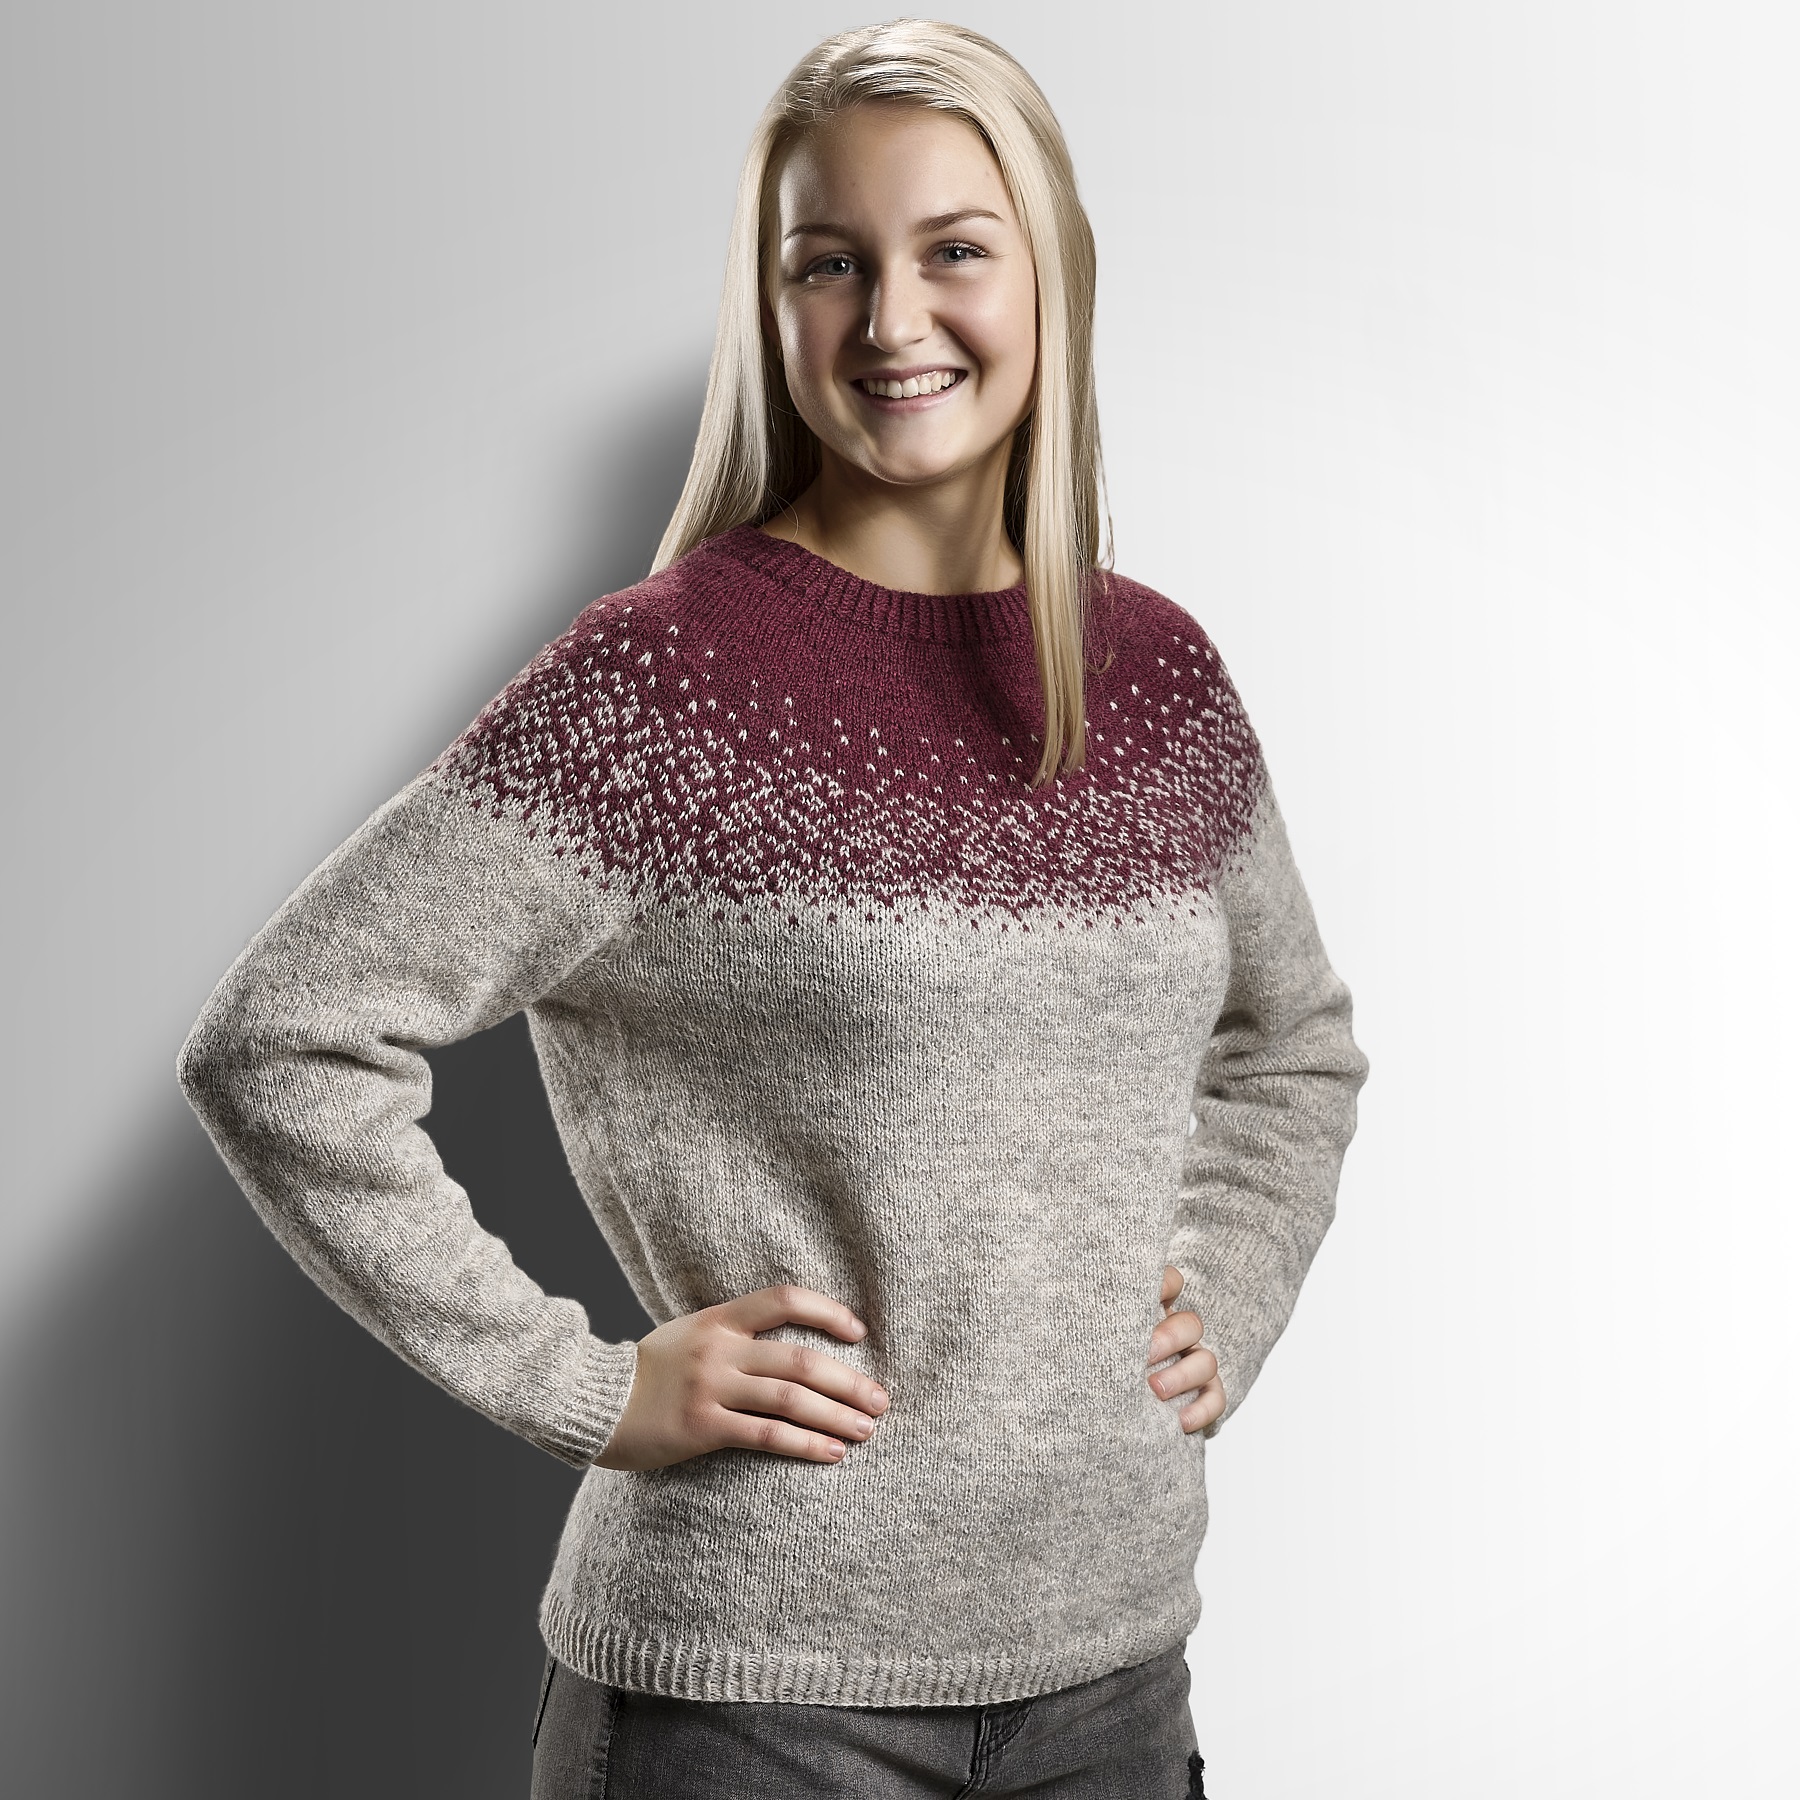 Shredded dyr stramt Snowflake sweater - KIT - Designer Sanne Fjalland